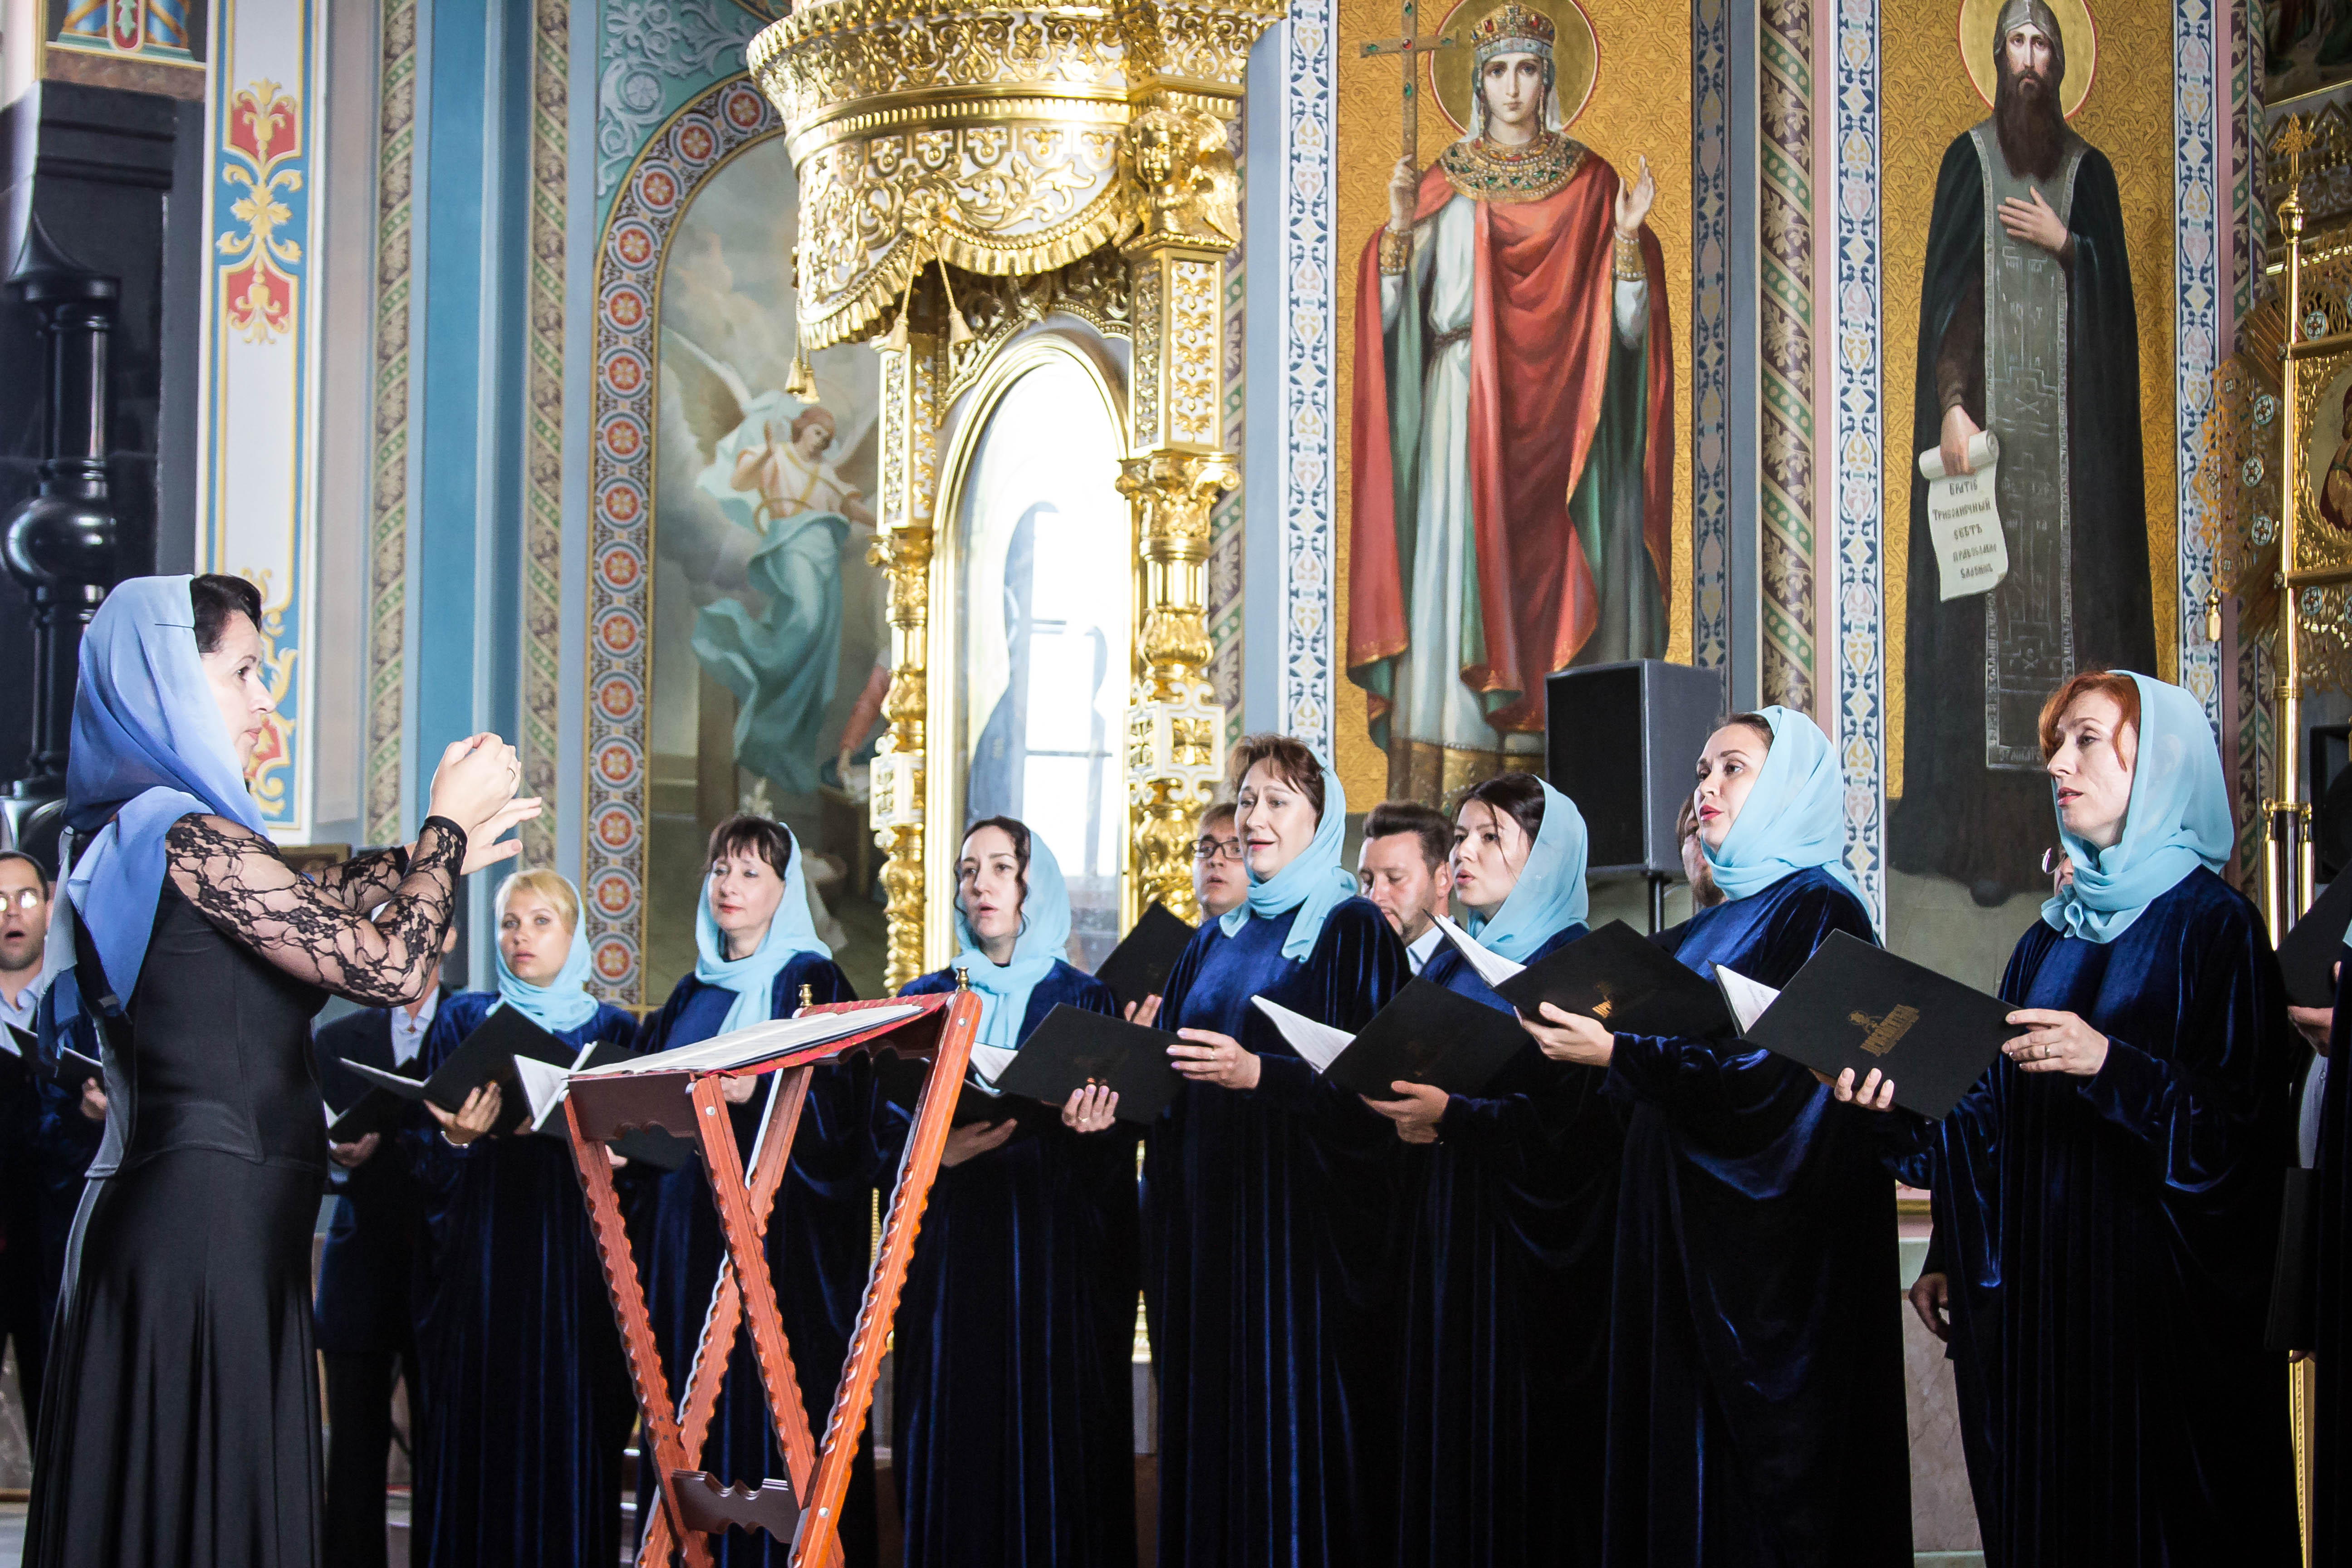 Площадка для певчих в православной церкви 6